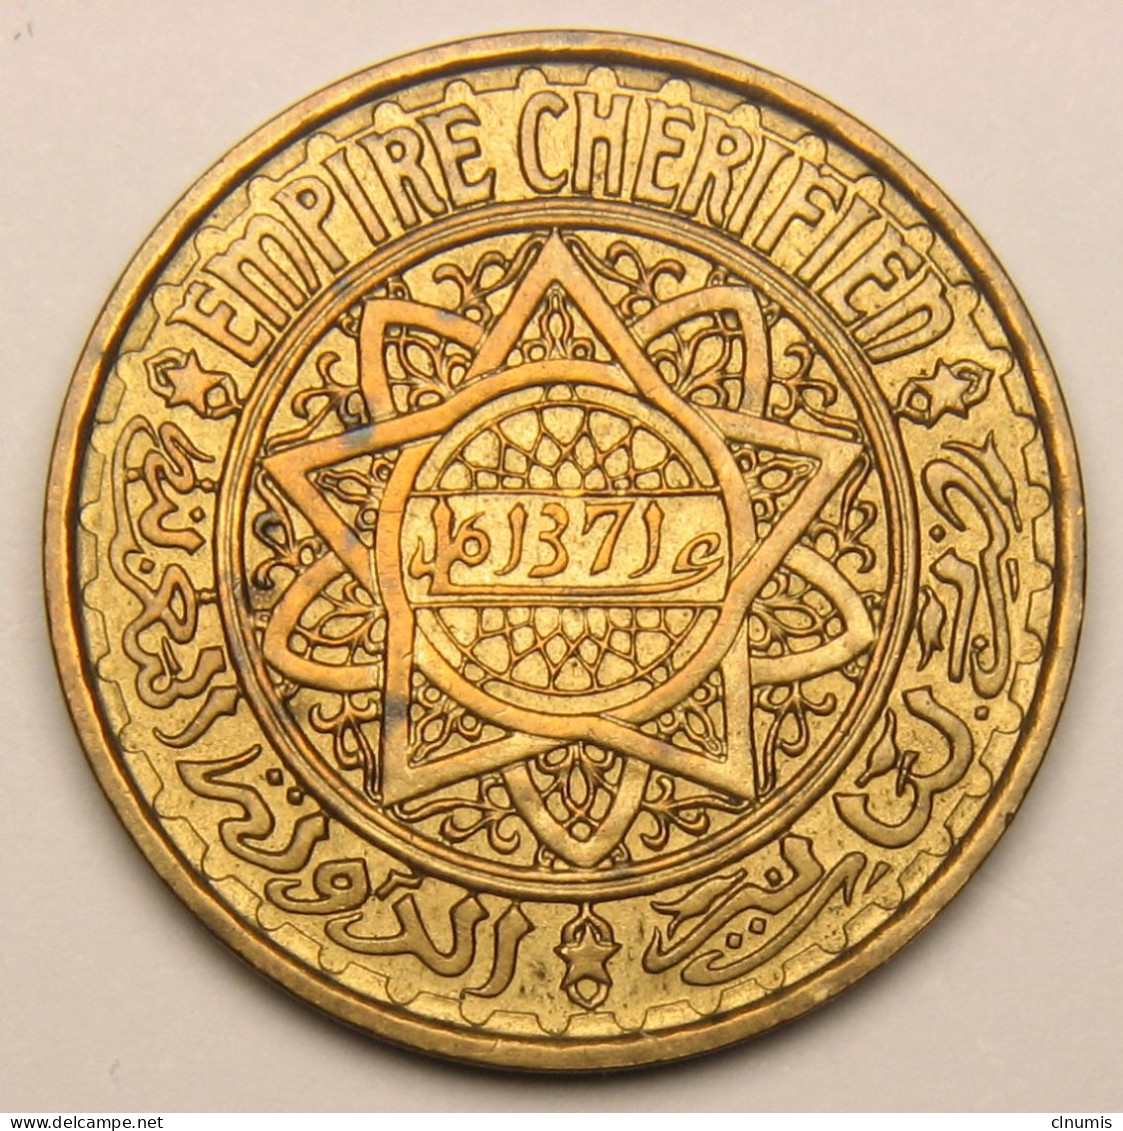 Maroc, Protectorat Français, 50 Francs 1952 (1371), Bronze-aluminium - Marokko